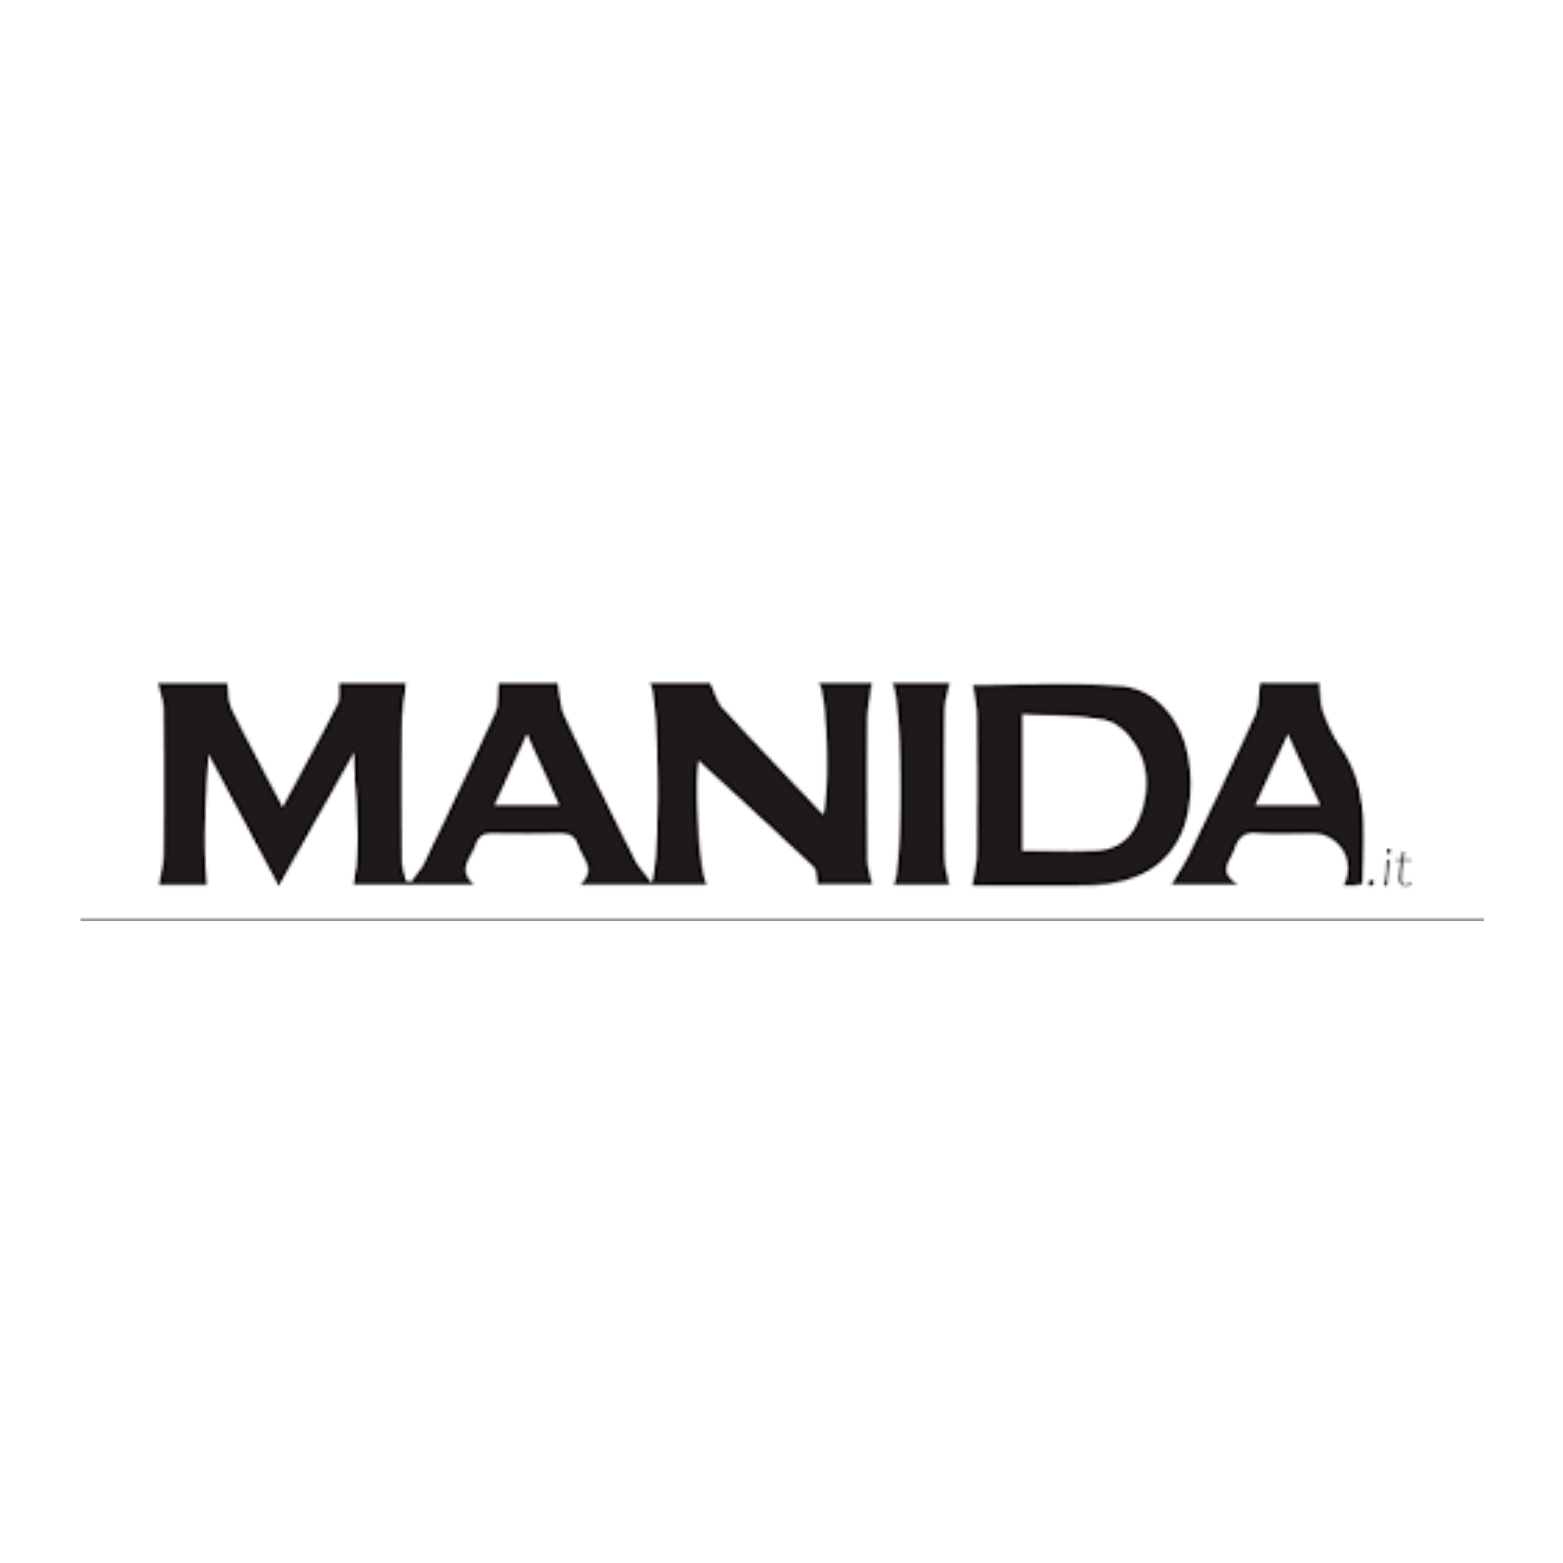 Manida